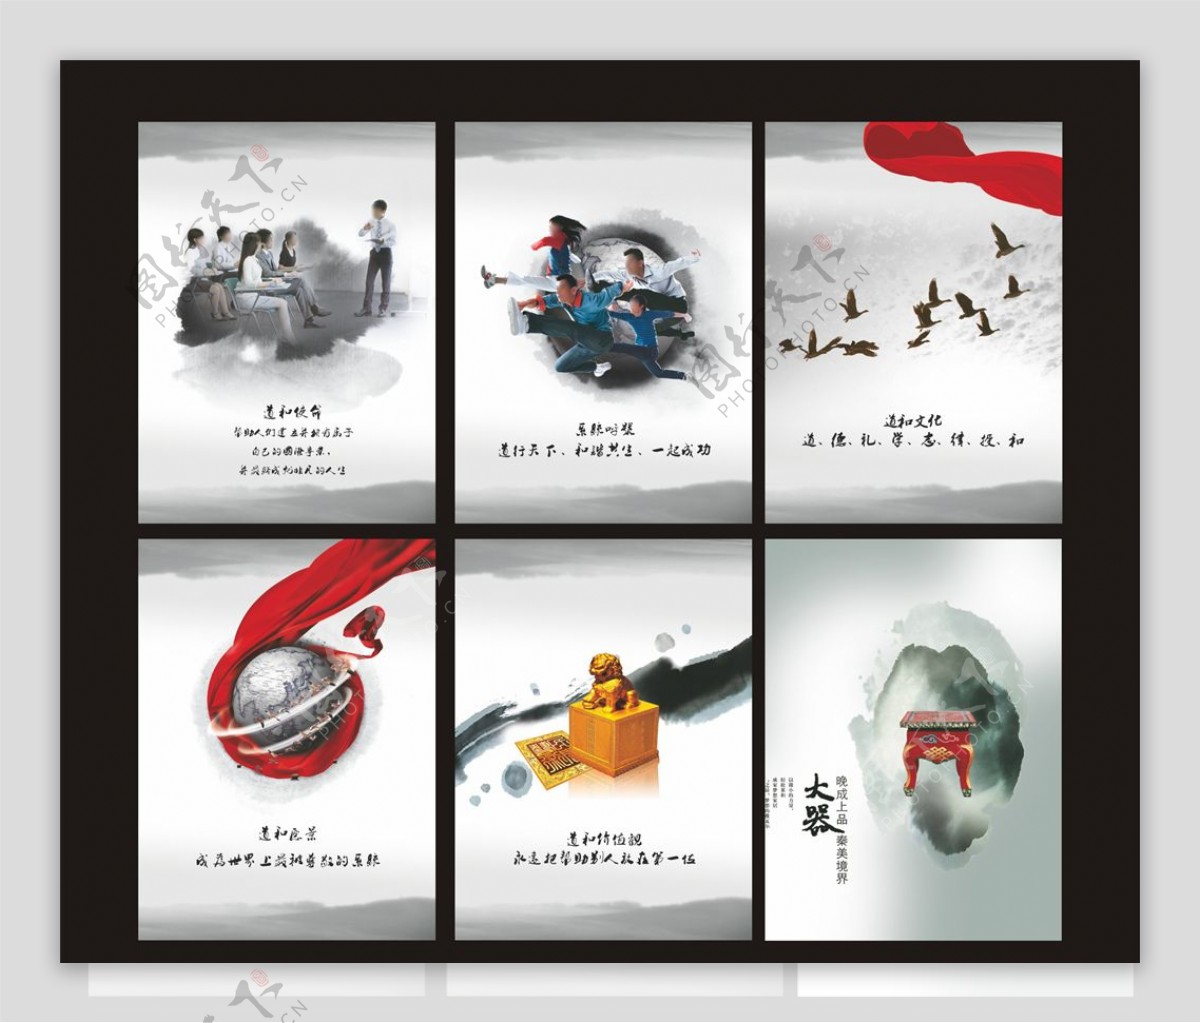 中国风水墨企业文化海报